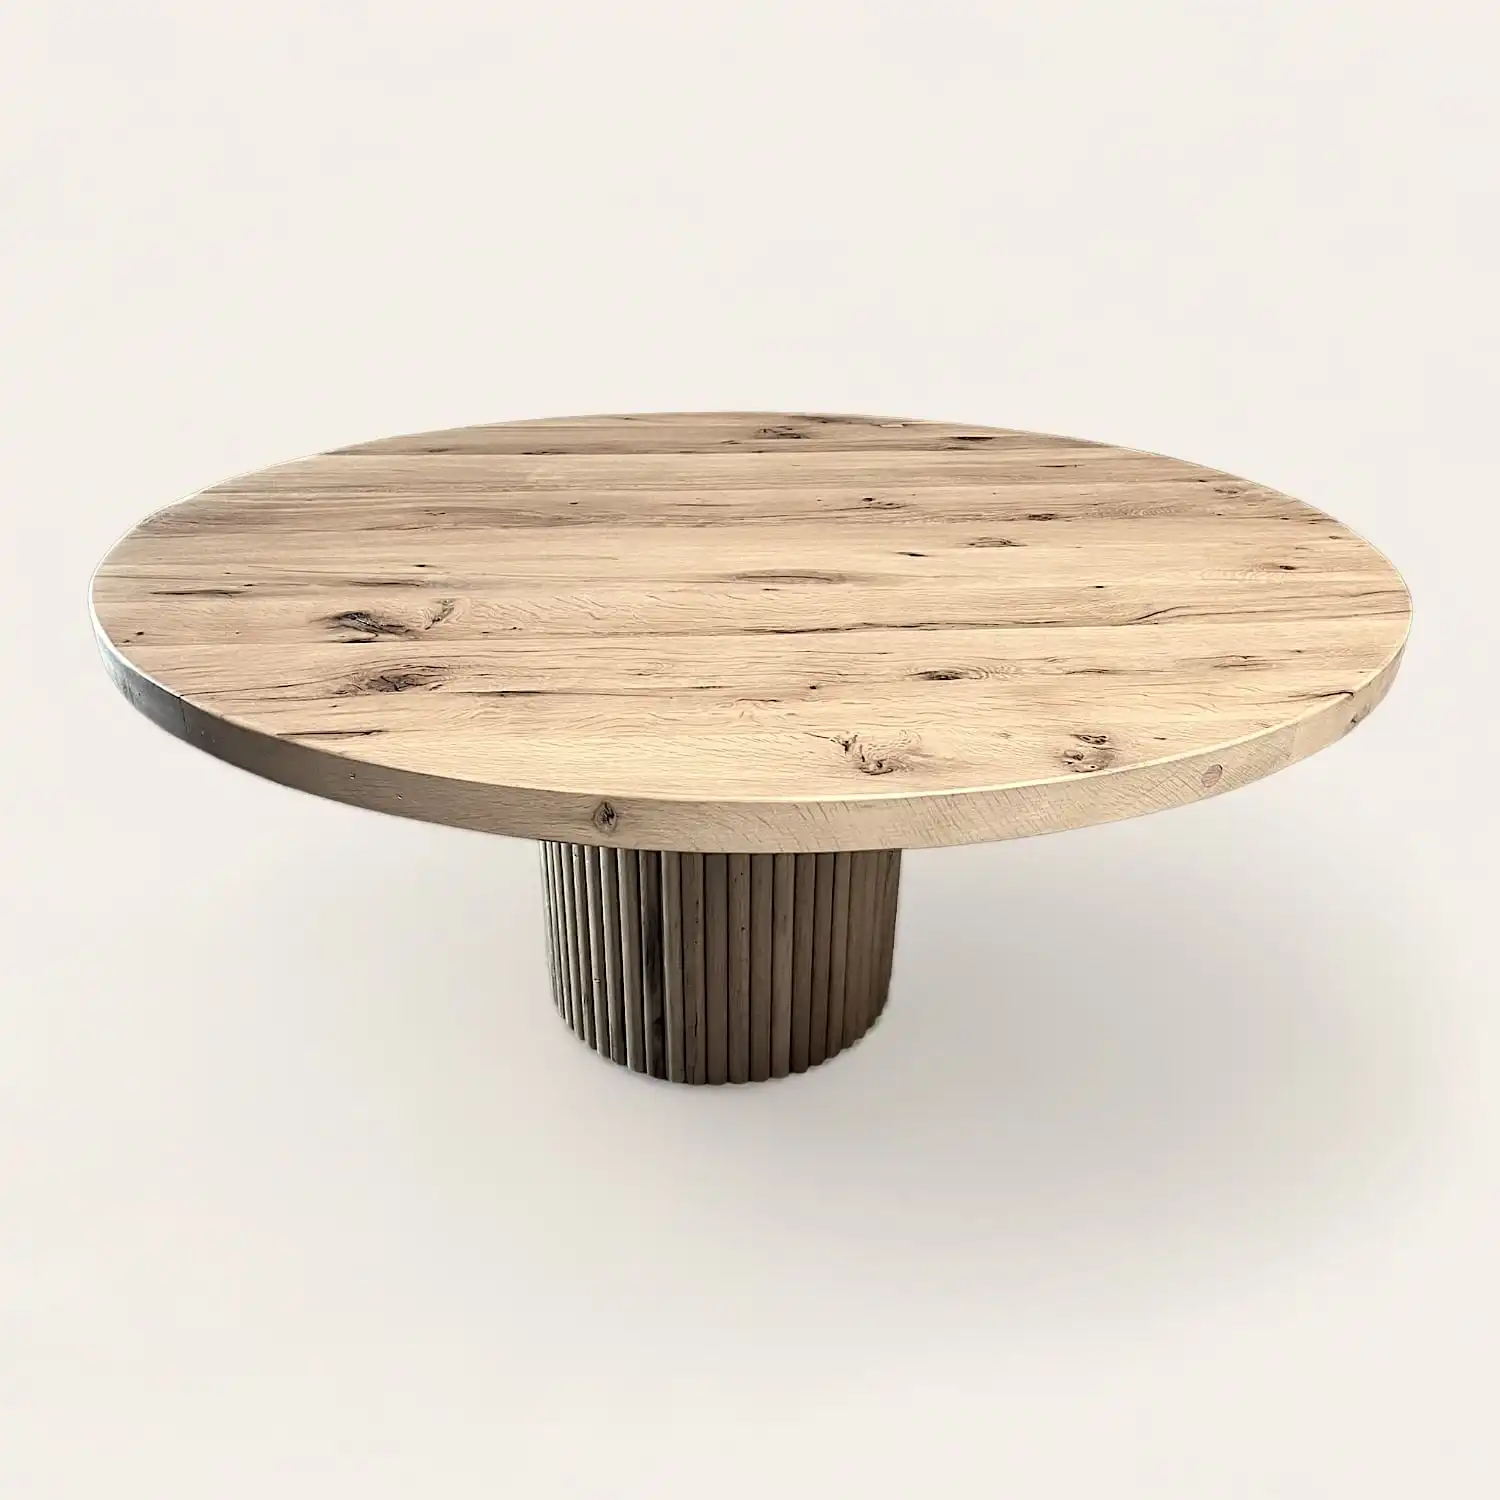  Une table rustique ronde en bois sur fond blanc. 